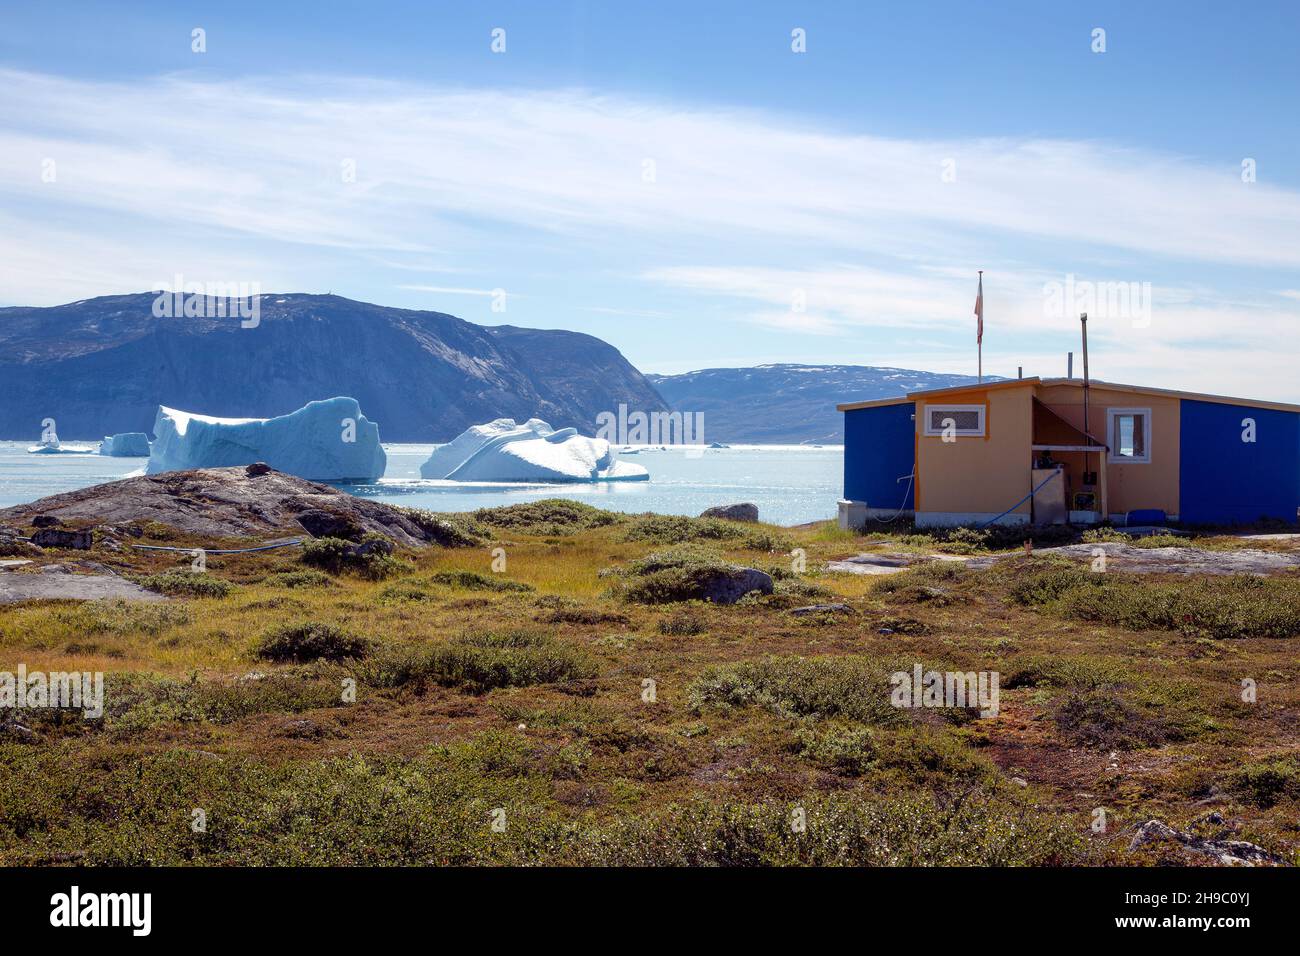 Ataa, Groenland. Camp L'Ataa camp est situé dans le nord du Groenland, à environ cinq heures de navigation à partir de Ilulissat, dans une magnifique baie, c'est l'idéal Banque D'Images